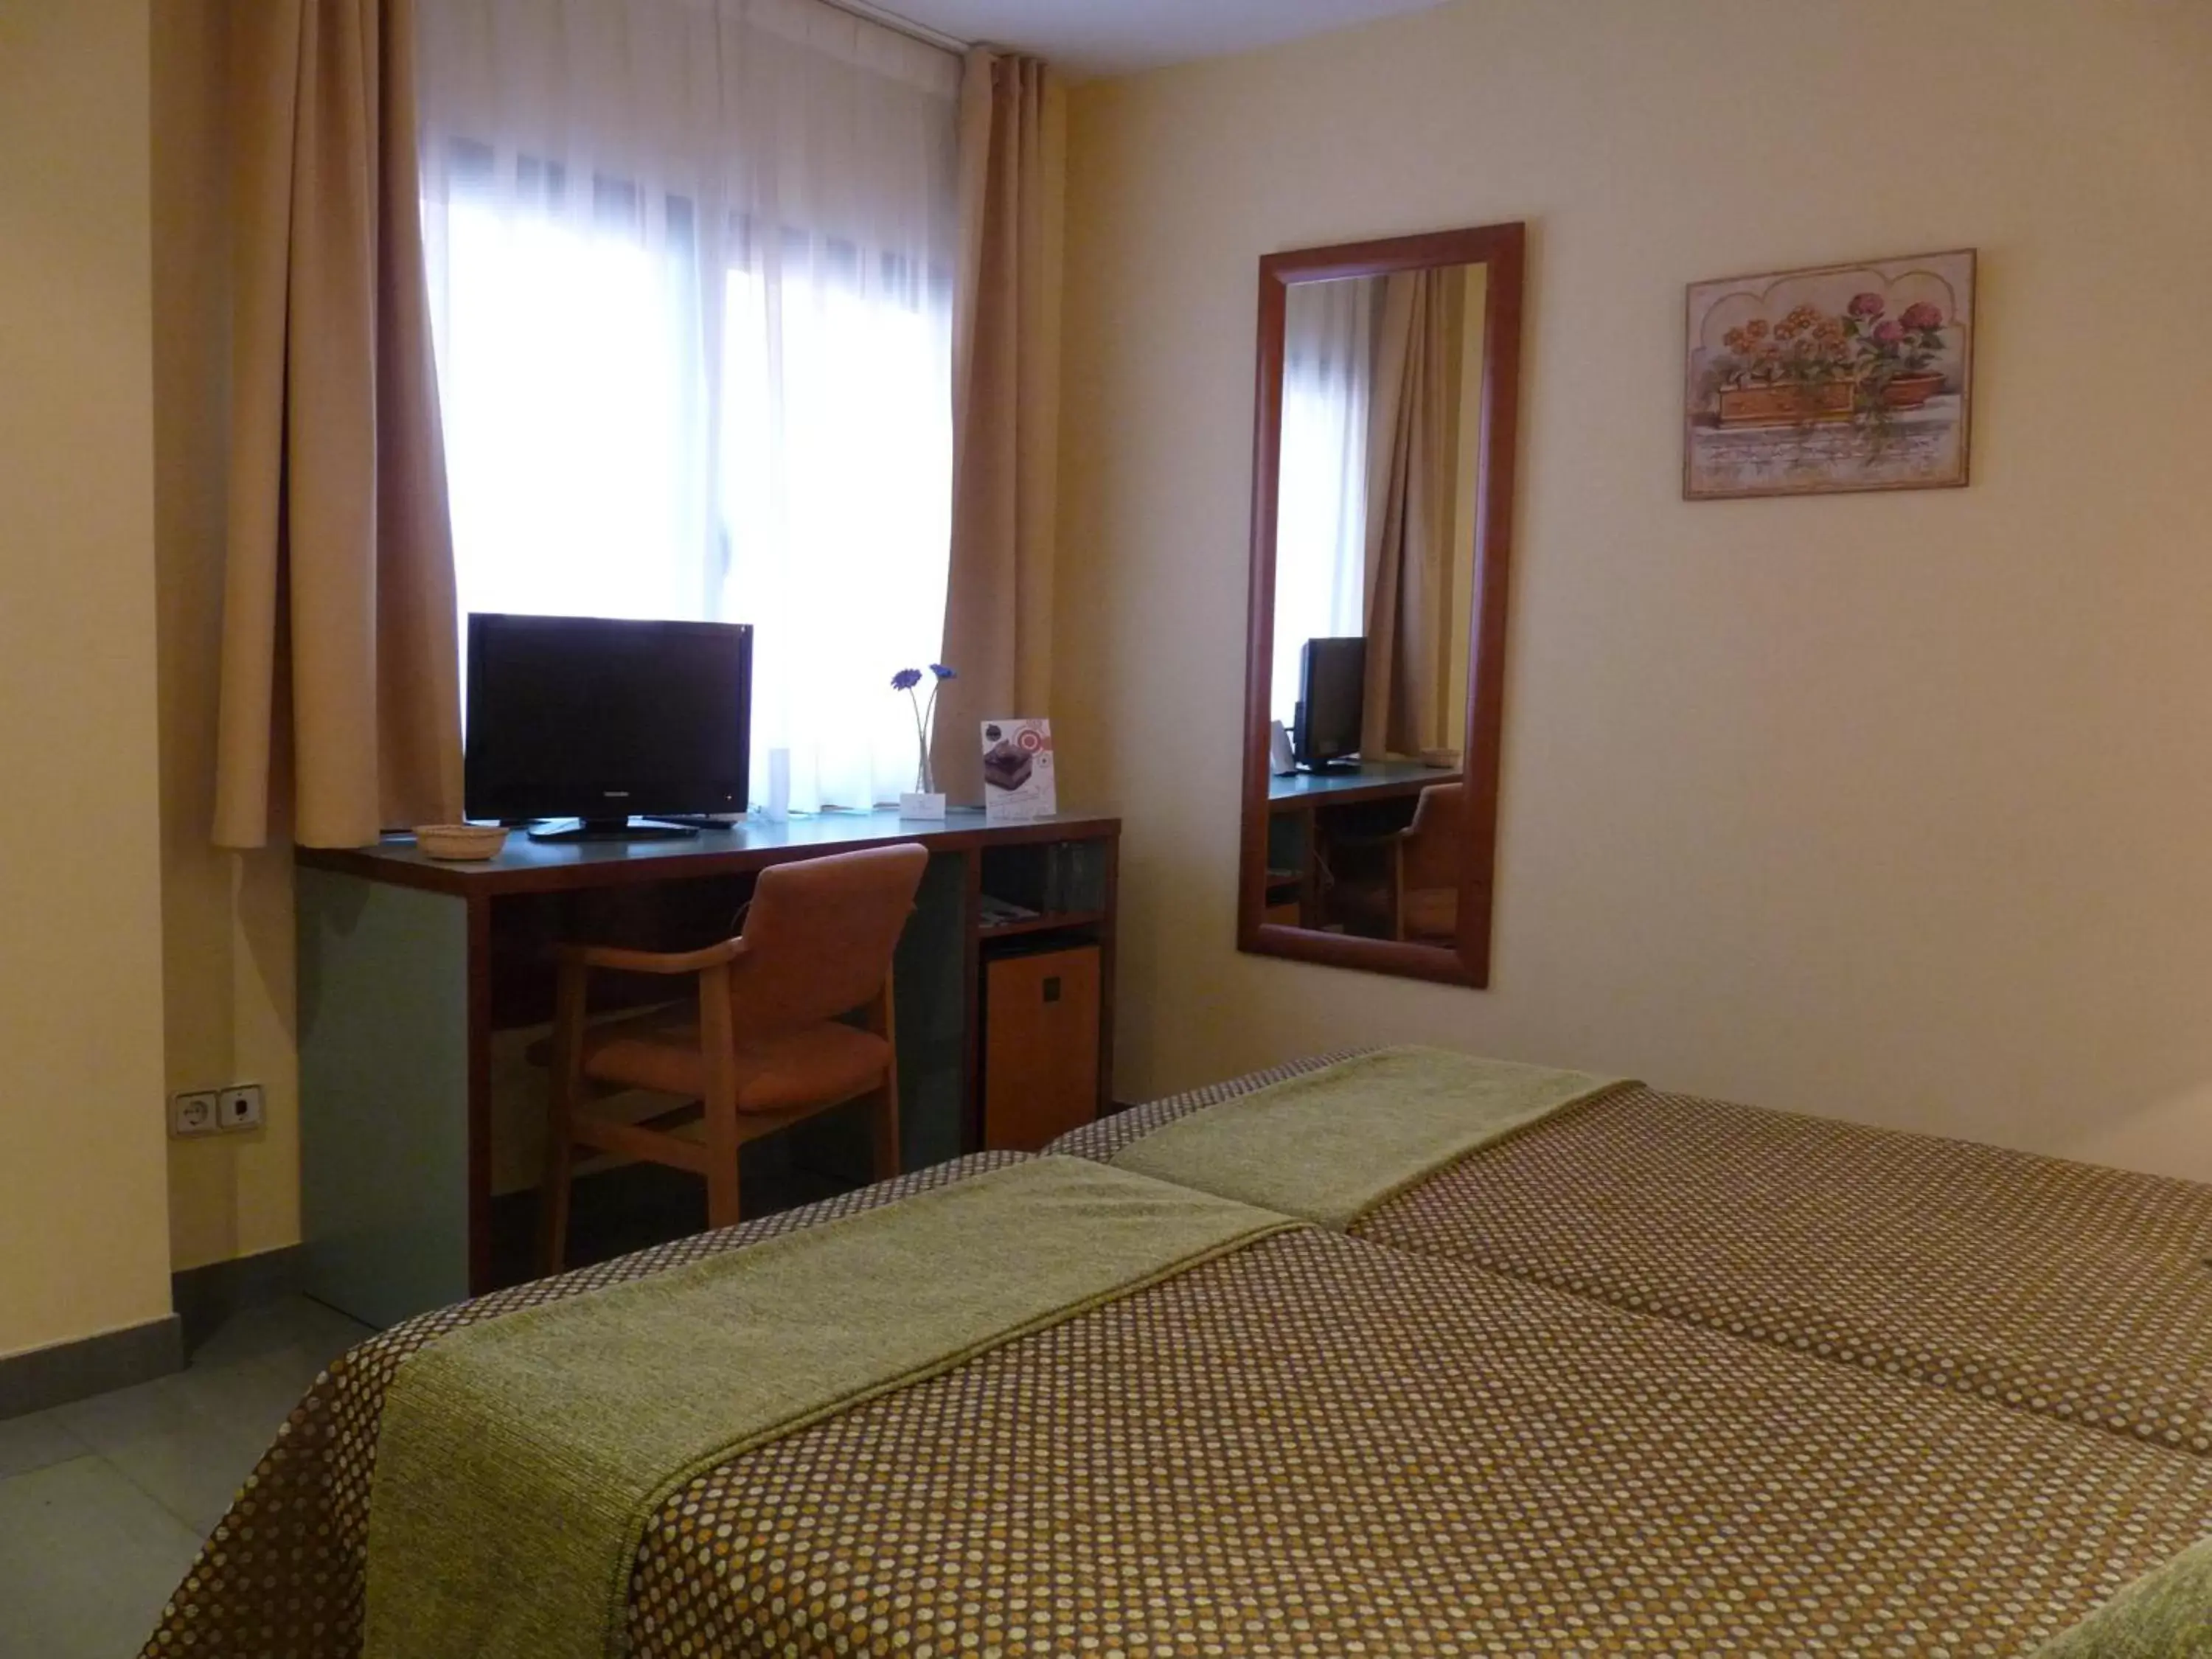 Economy Twin Room in Hotel Jardín de Aranjuez